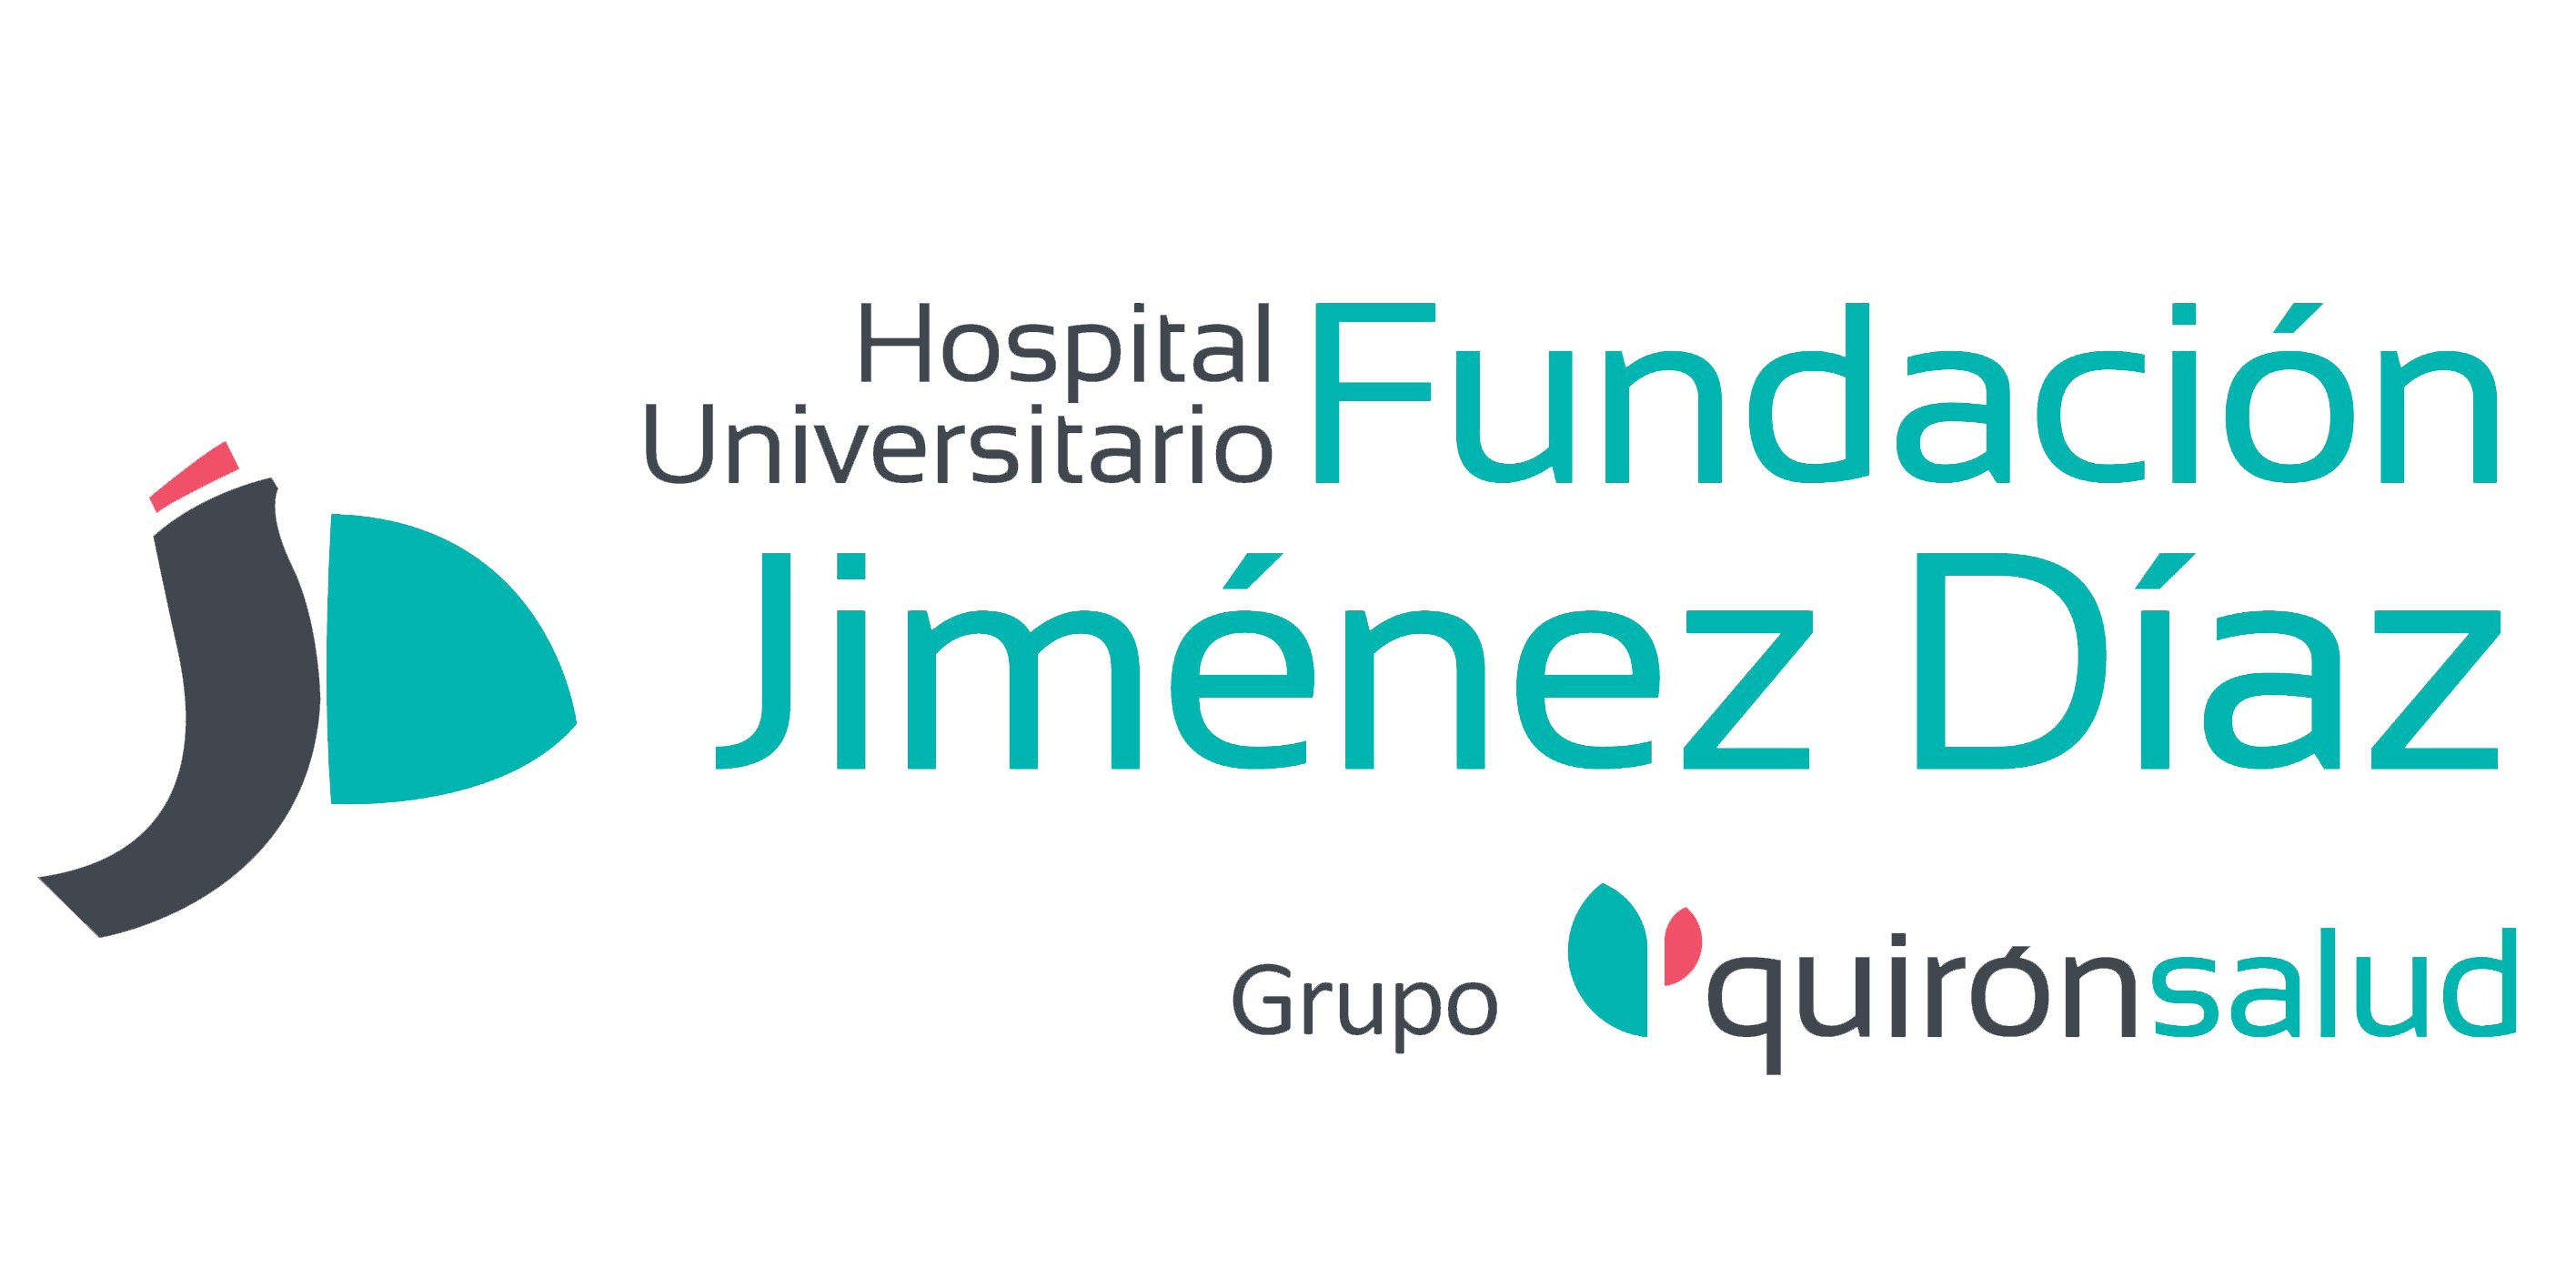 Fundación Jiménez Díaz